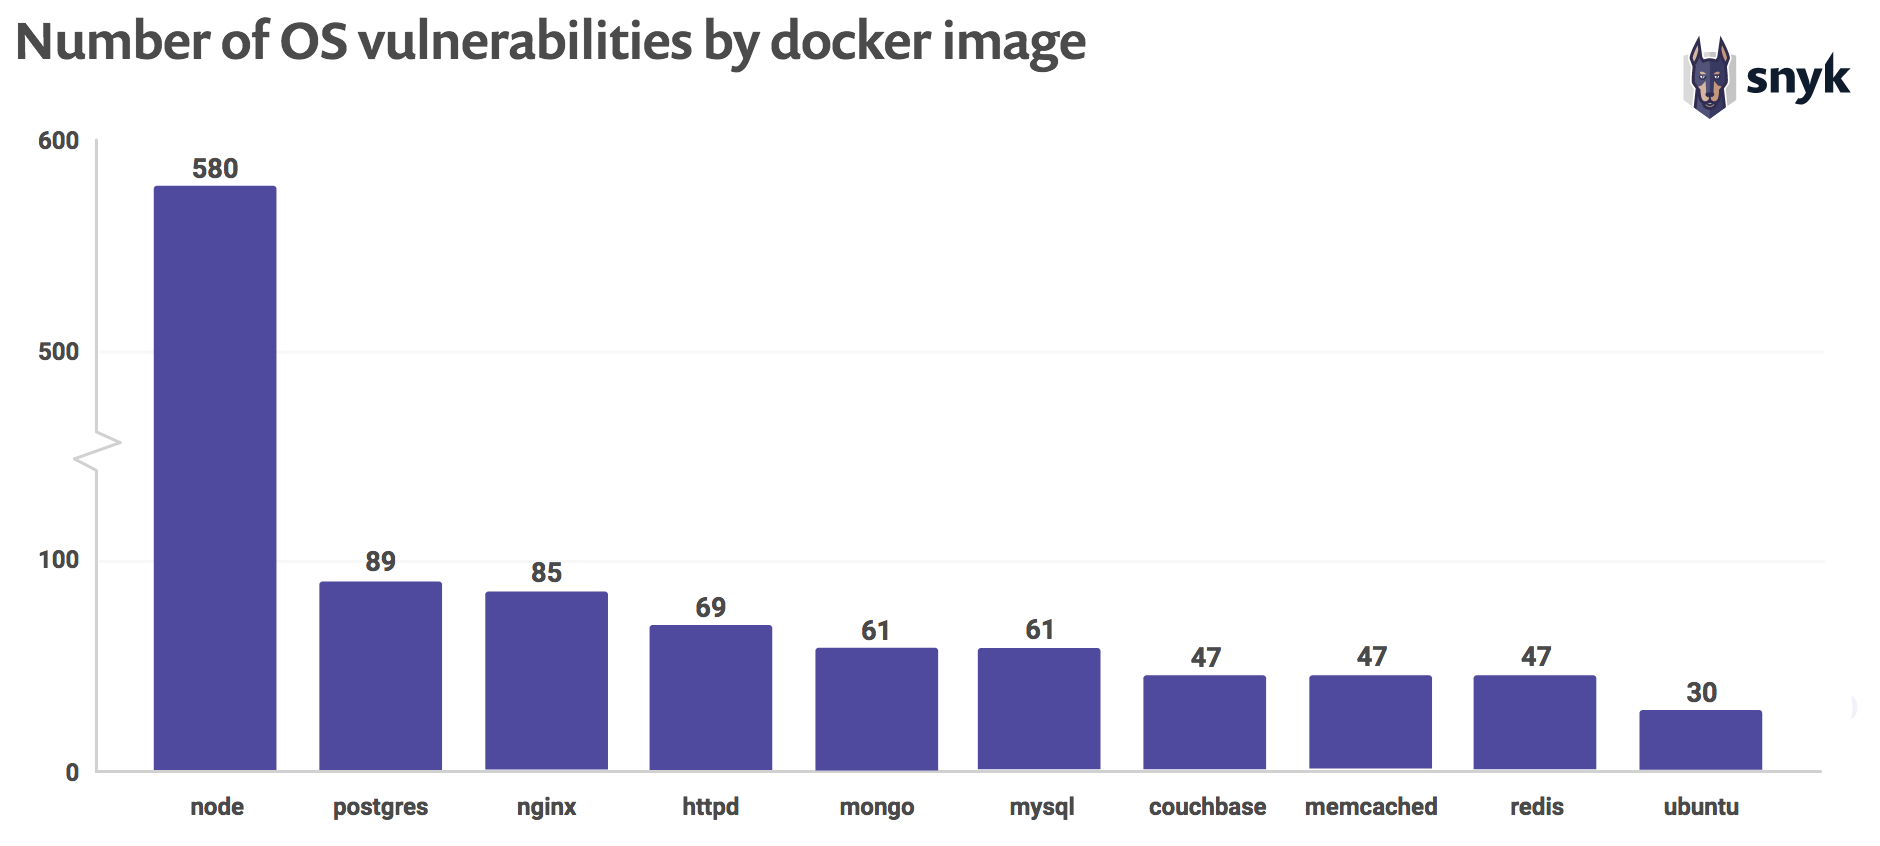 Docker vulnerabilities